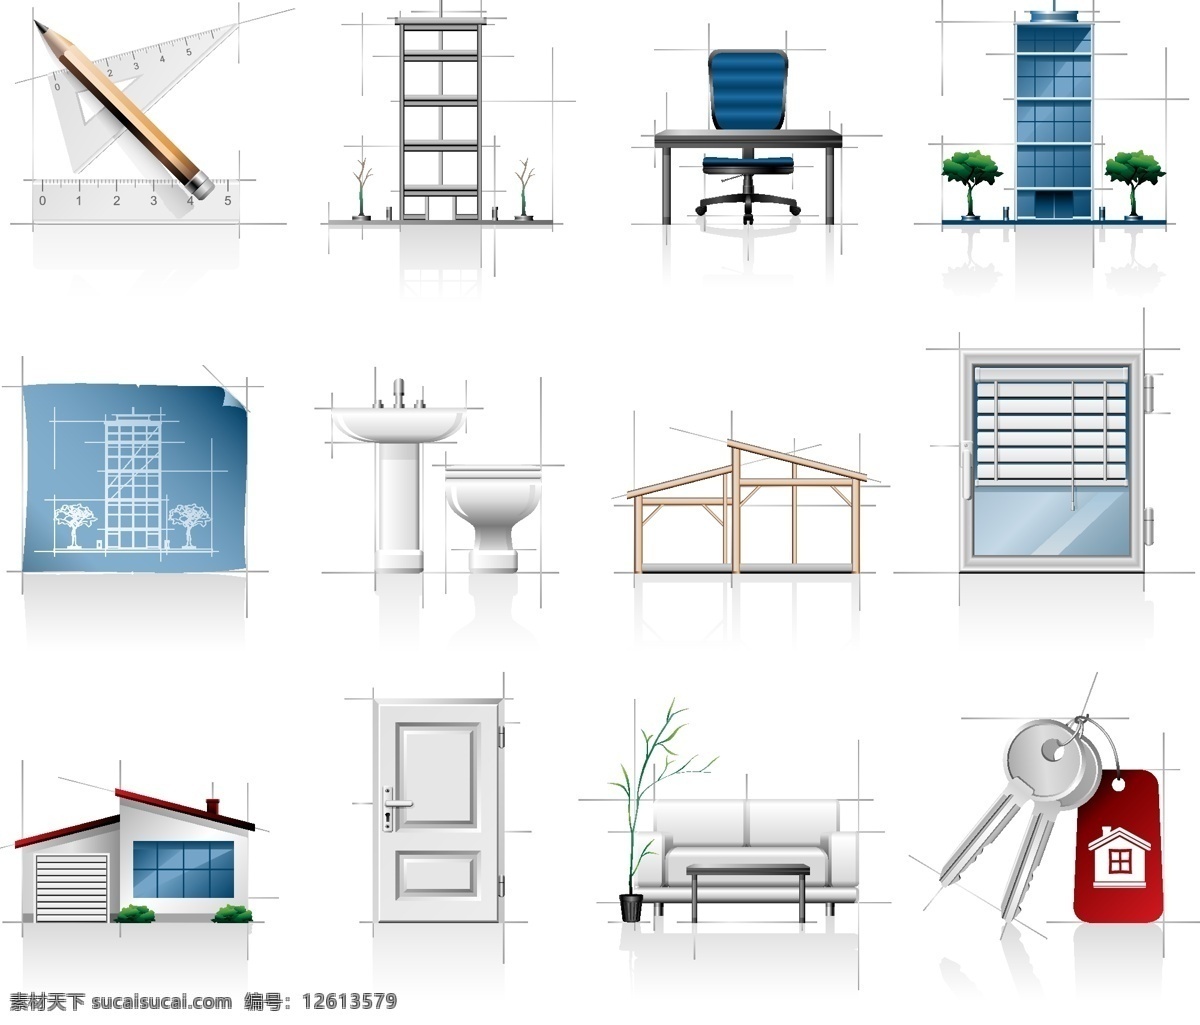 室内 建筑 图纸 矢量 办公桌椅 洁具 木门 平面图 沙发 室内设计 矢量图 其他矢量图